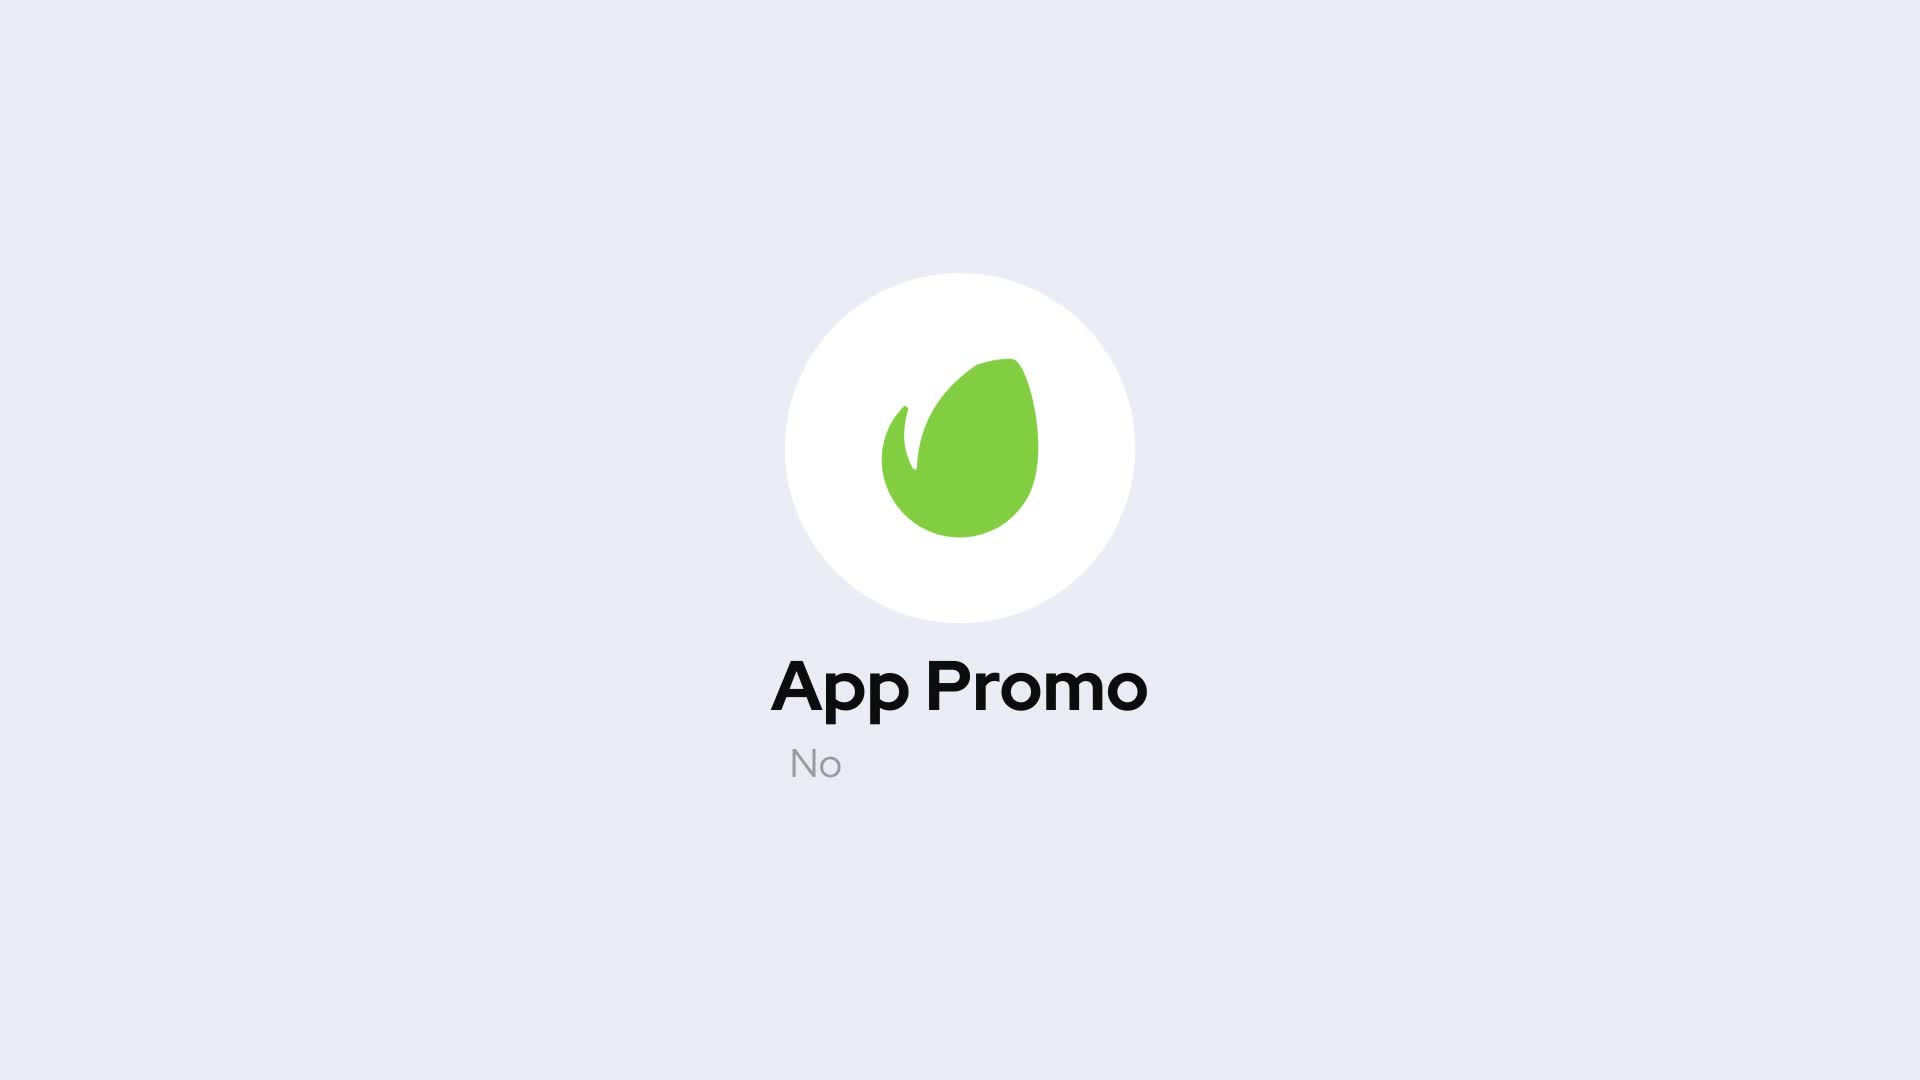 Mobile App Promo for Premiere Pro Videohive 38495584 Premiere Pro Image 1